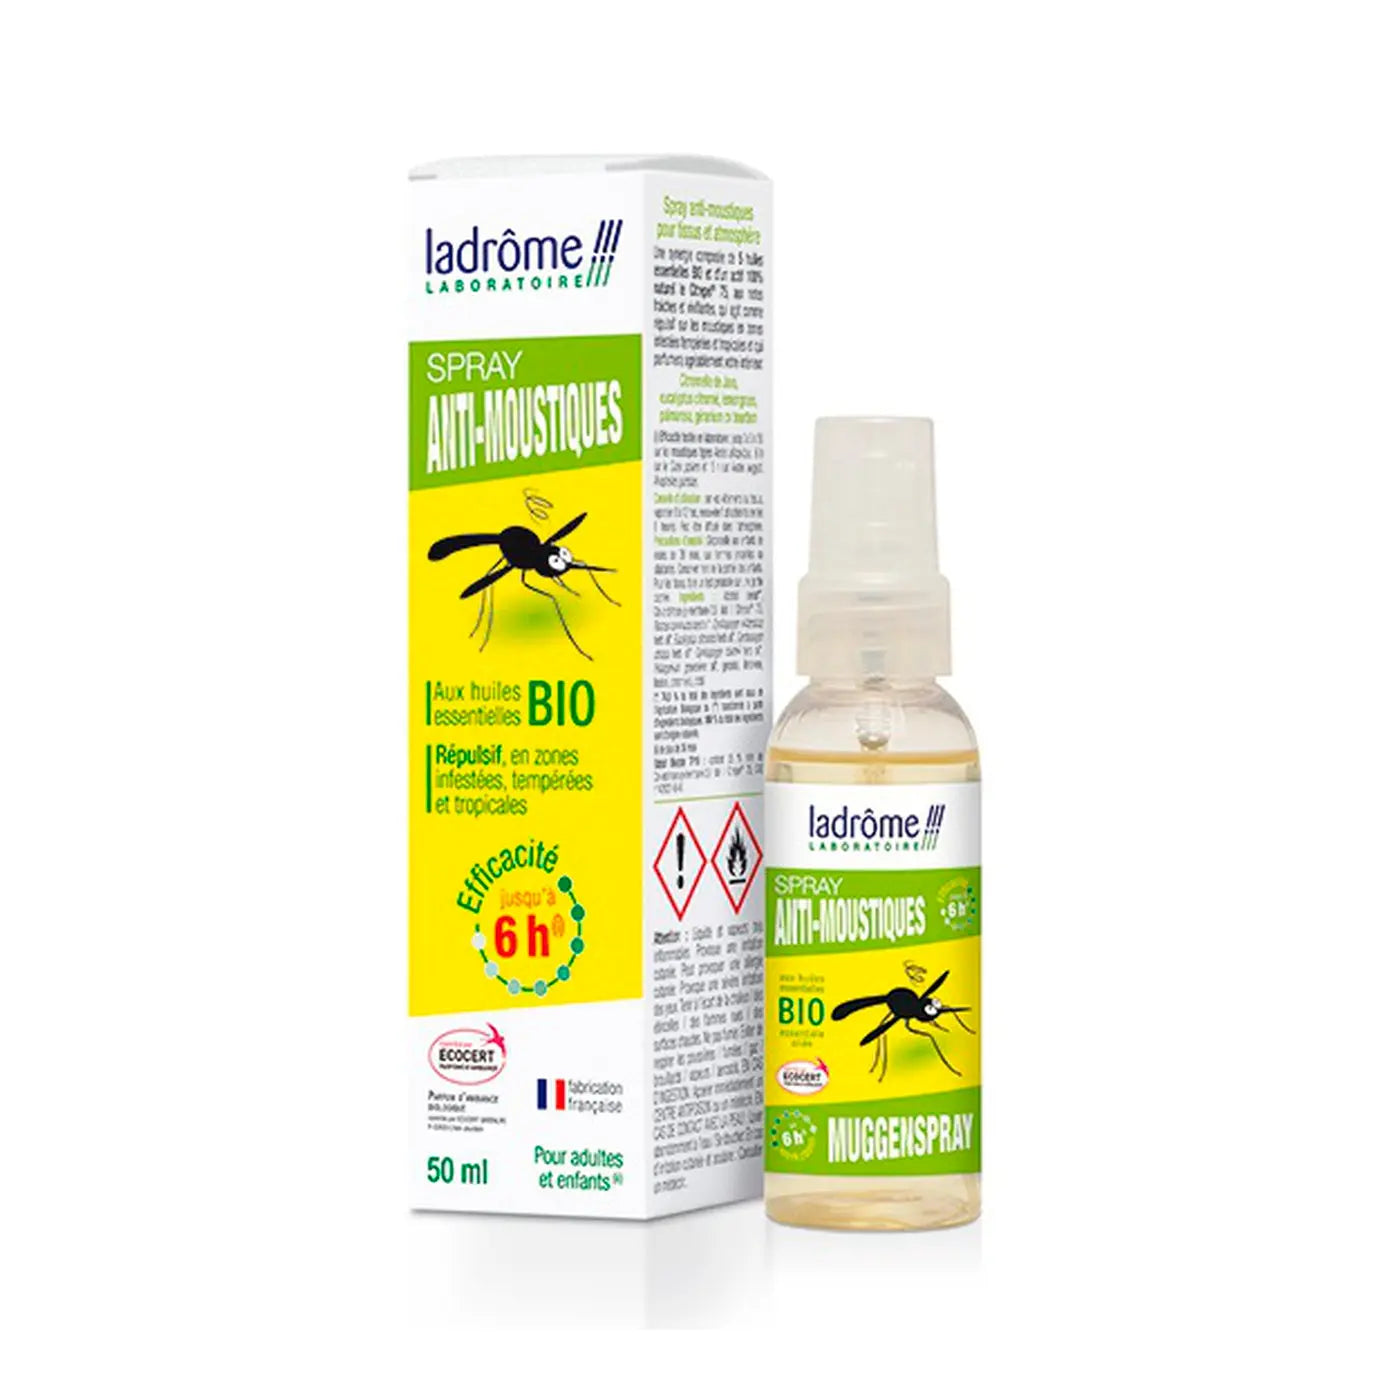 Spray anti-mosquitos BIO Ladrome